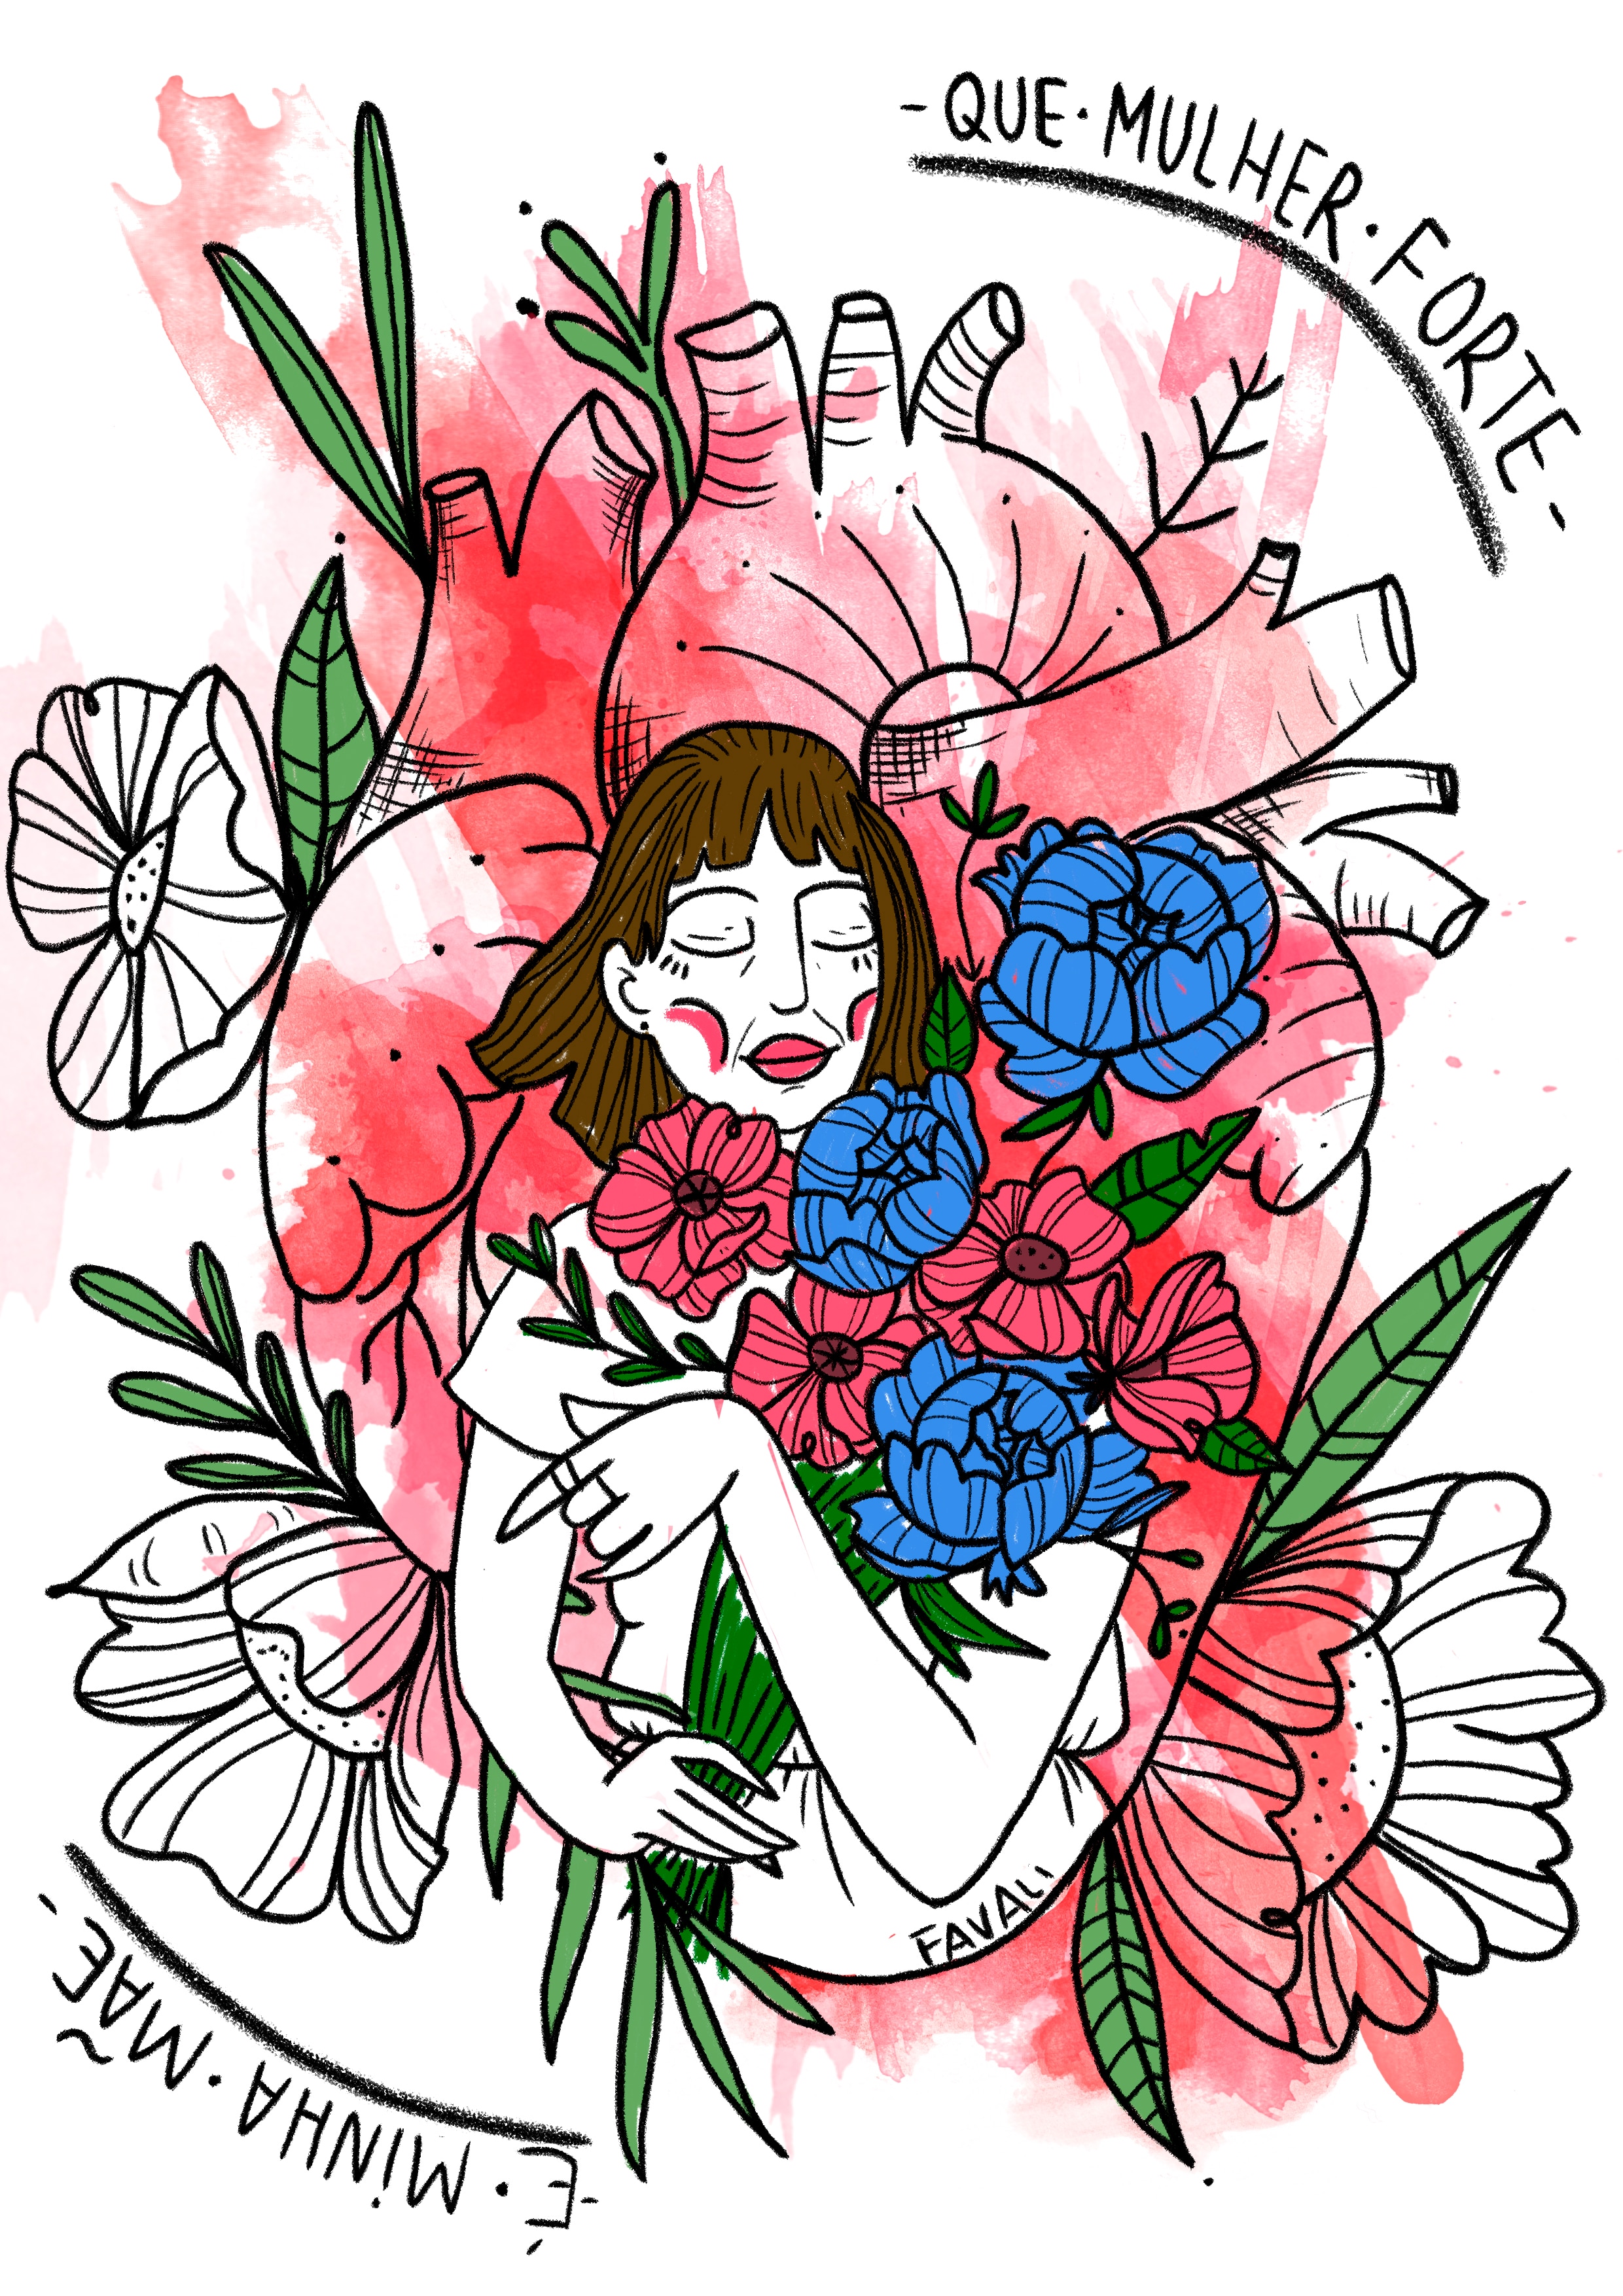 Imagem no estilo xilogravura mostra mãe com coração atrás dela e flores nos braçoslher 